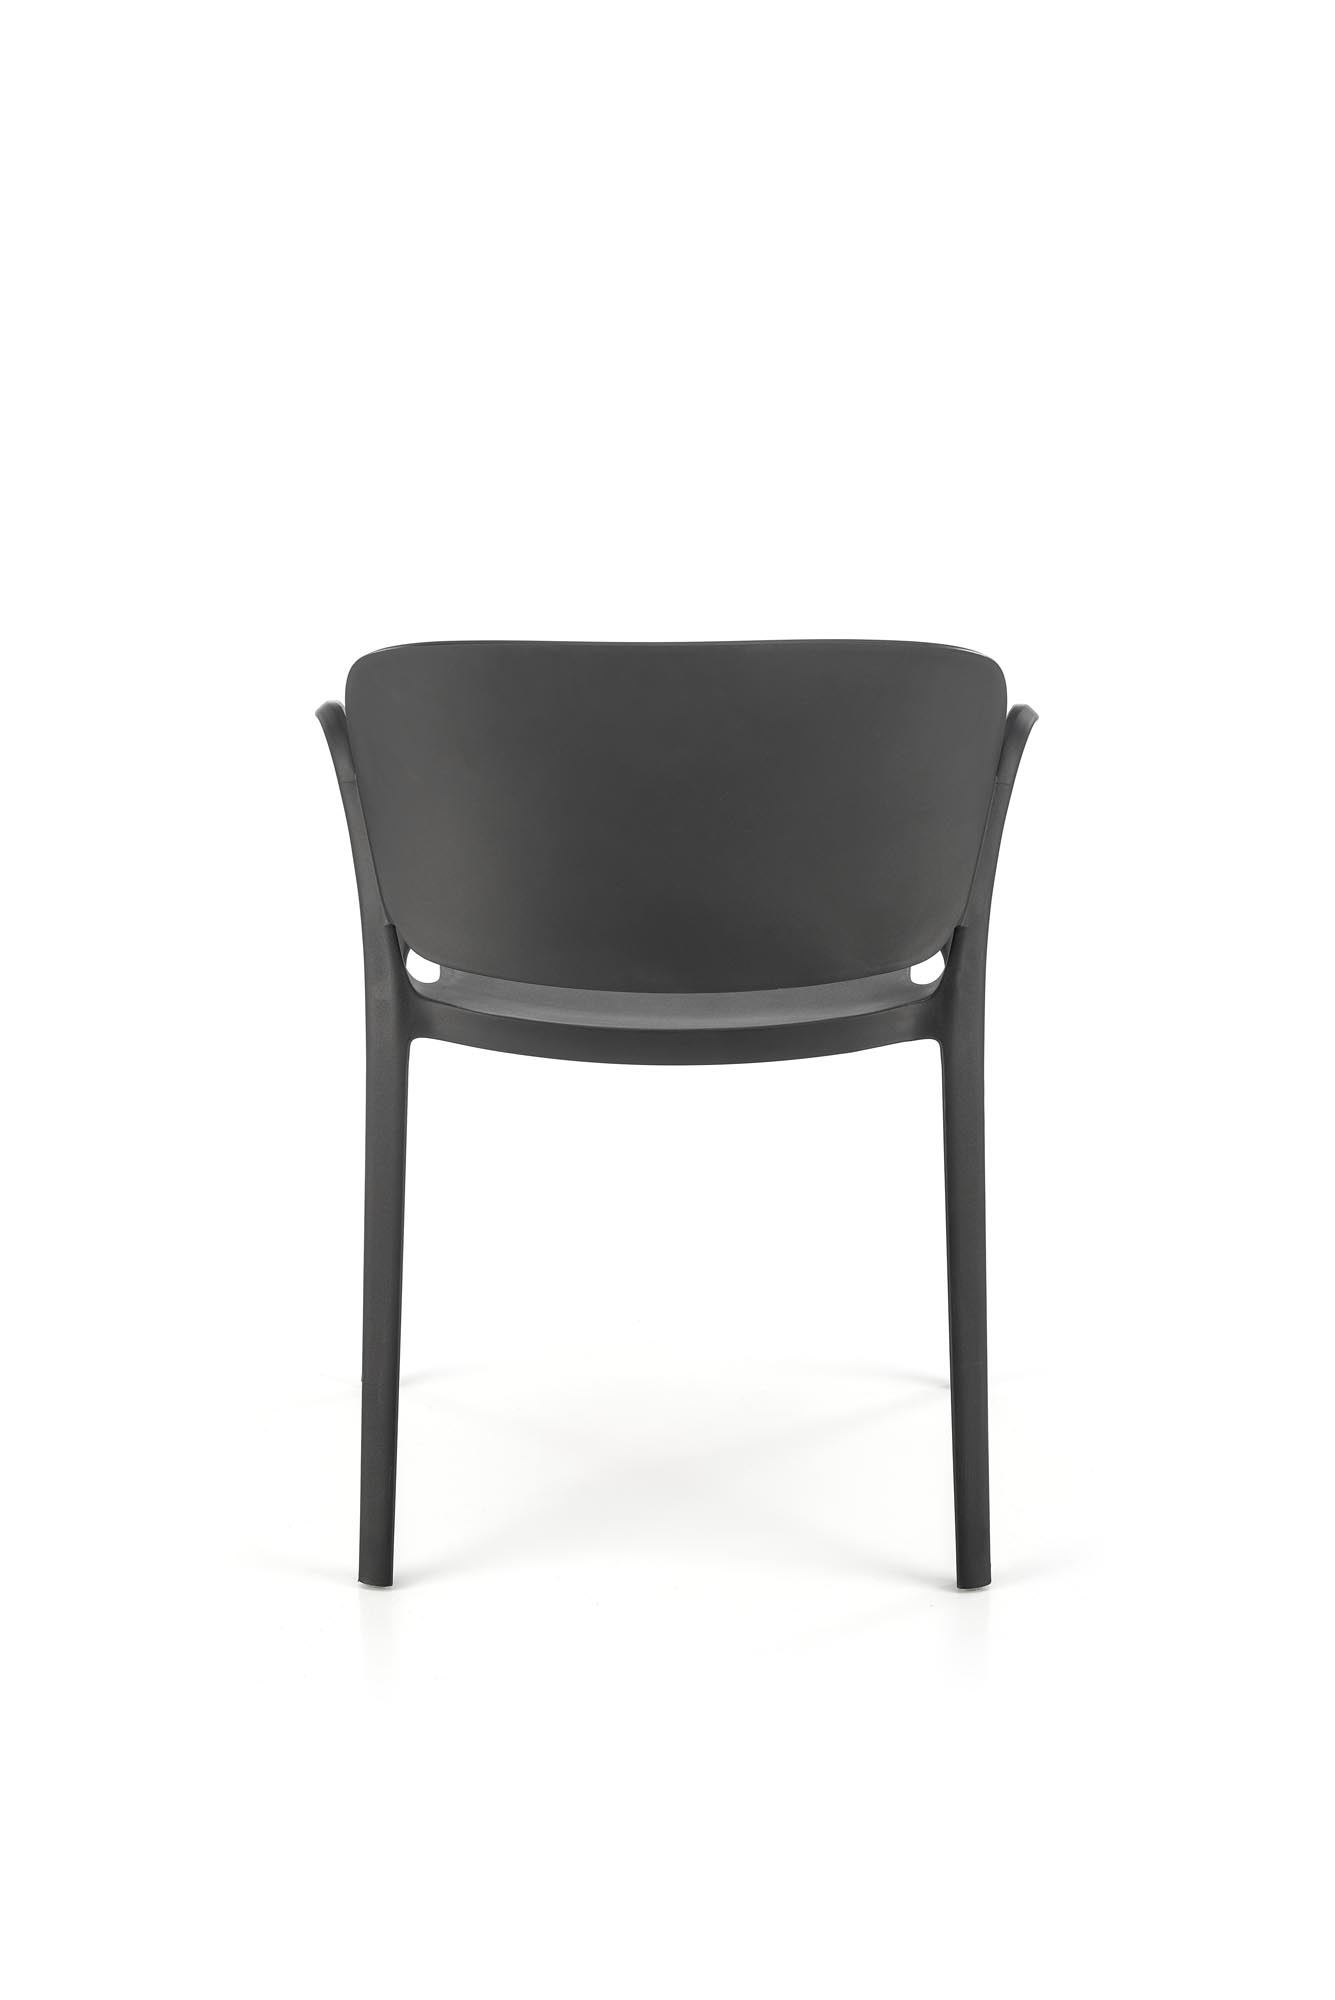 židle z umělé hmoty K491 - Černý židle z umělé hmoty k491 - Černý